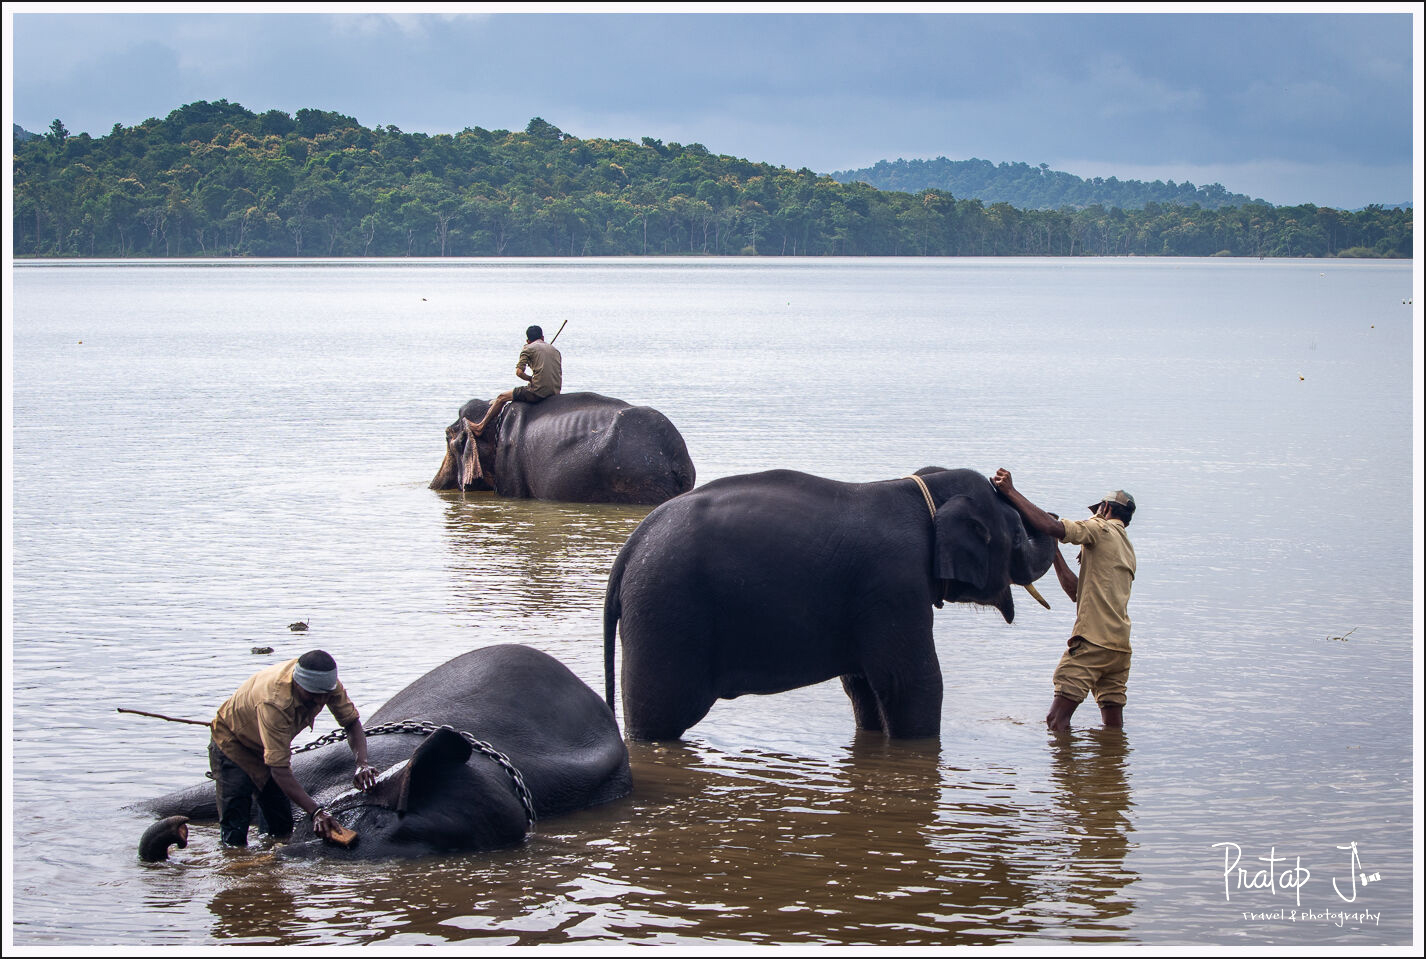 Elephants bathing at Sakrebyle